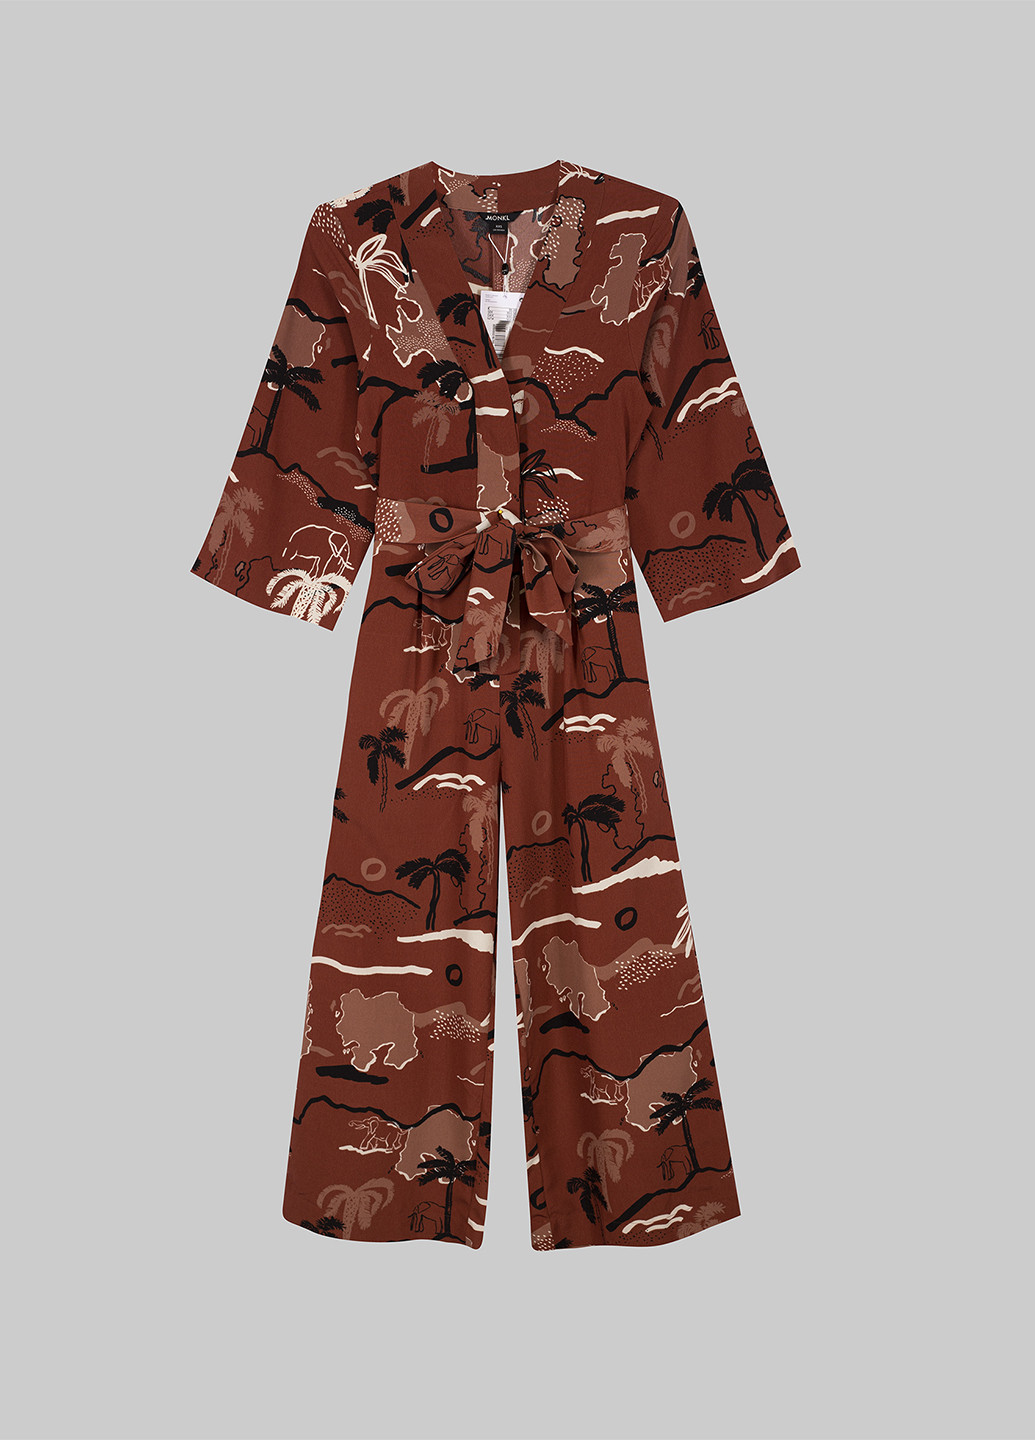 Комбінезон Monki комбінезон-брюки малюнок коричневий кежуал поліестер